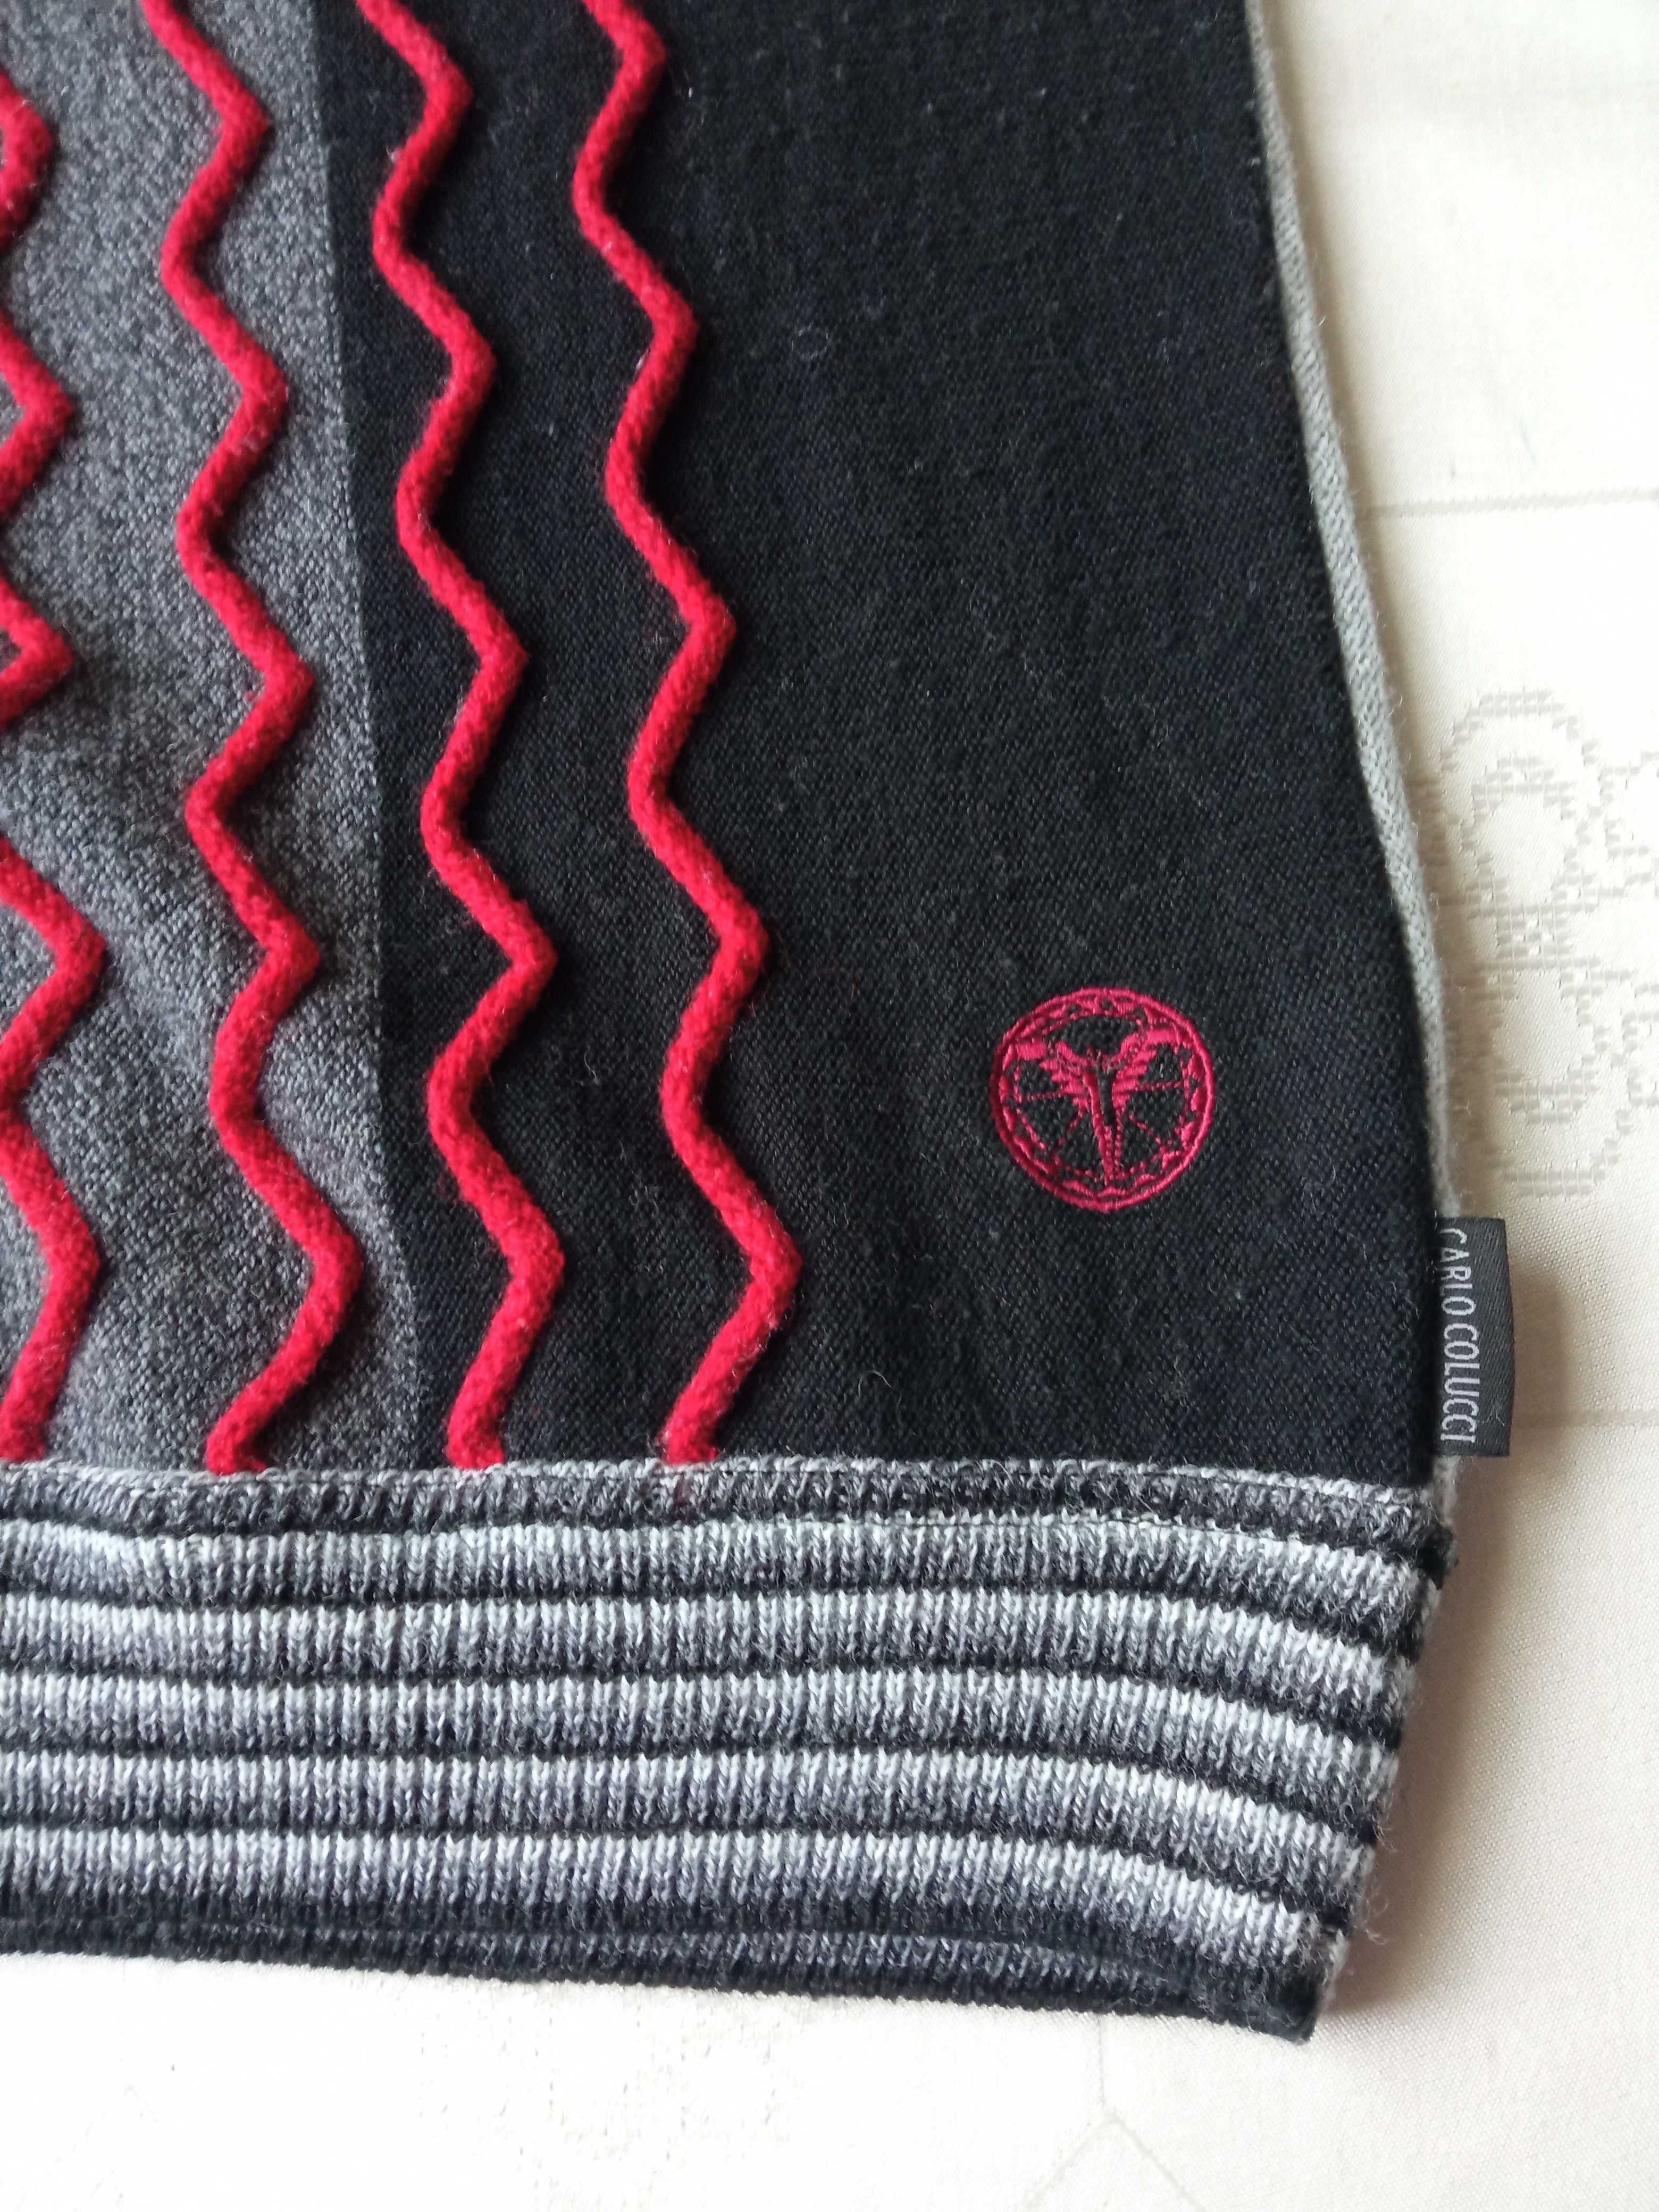 Carlo Colucci  męski sweter przez głowę 50% wełna merynos r XL